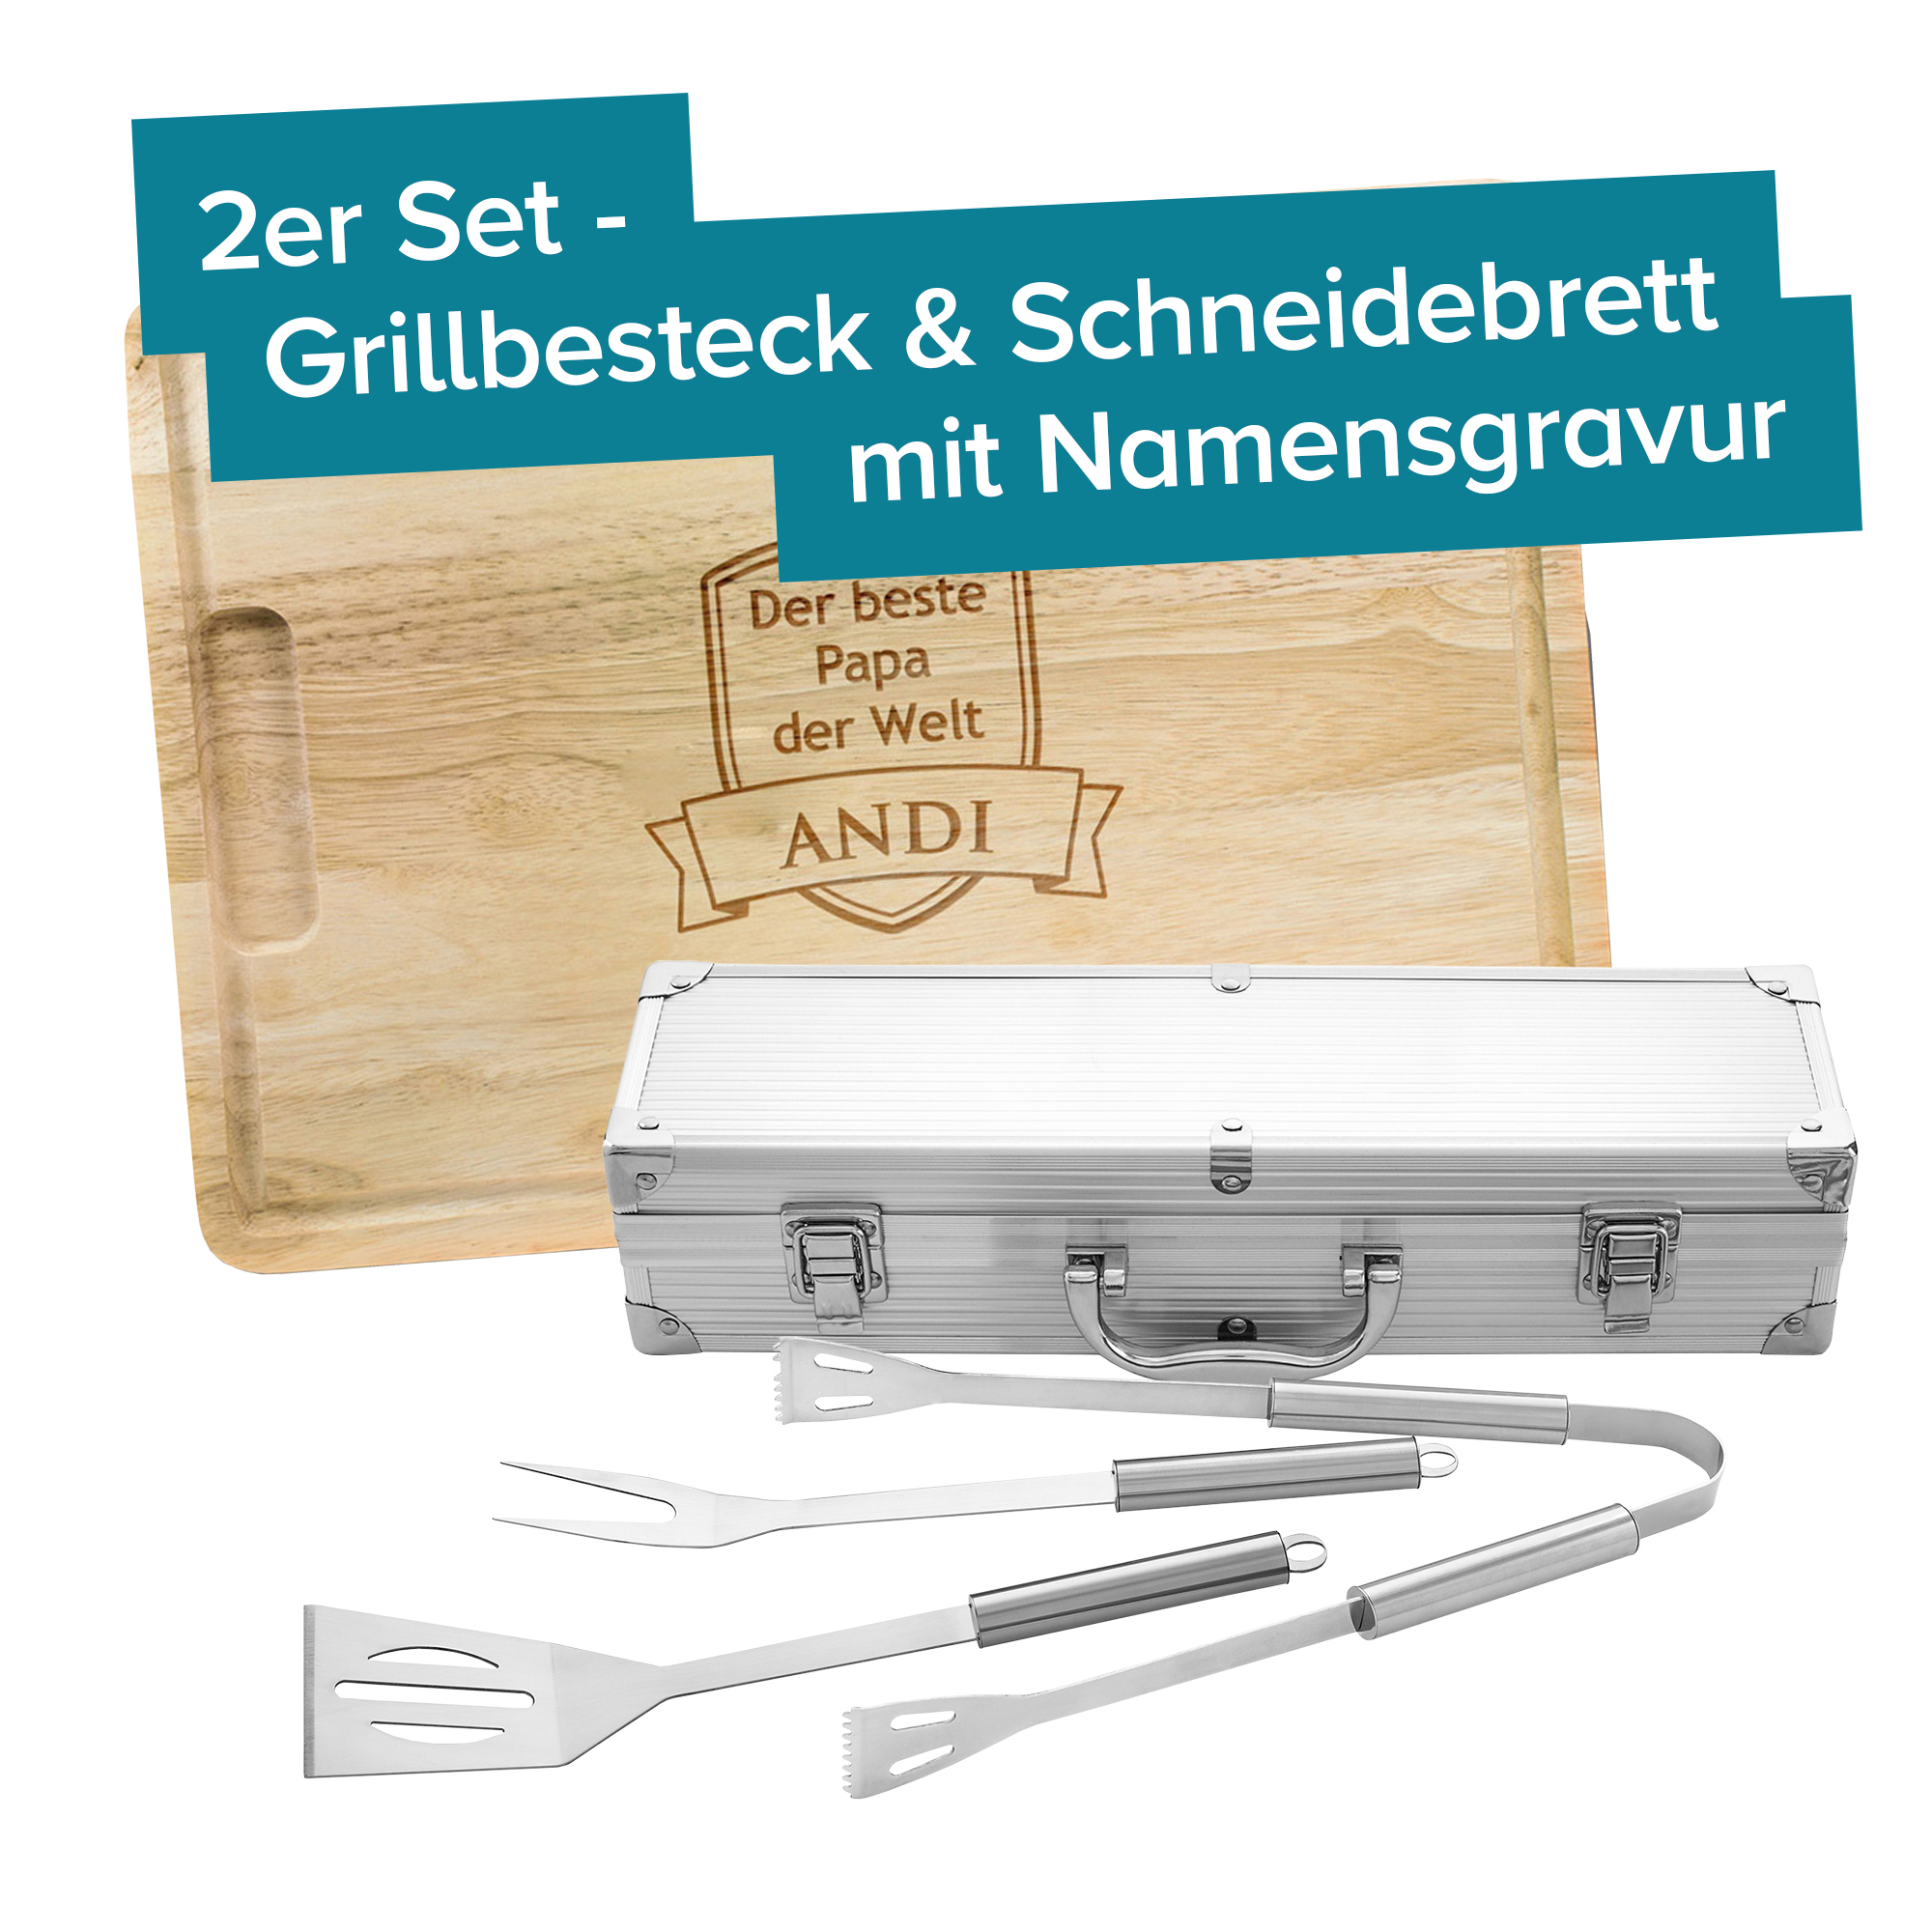 Grillbesteck Koffer mit Schneidebrett Grillset - Bester Papa 4137 - 2